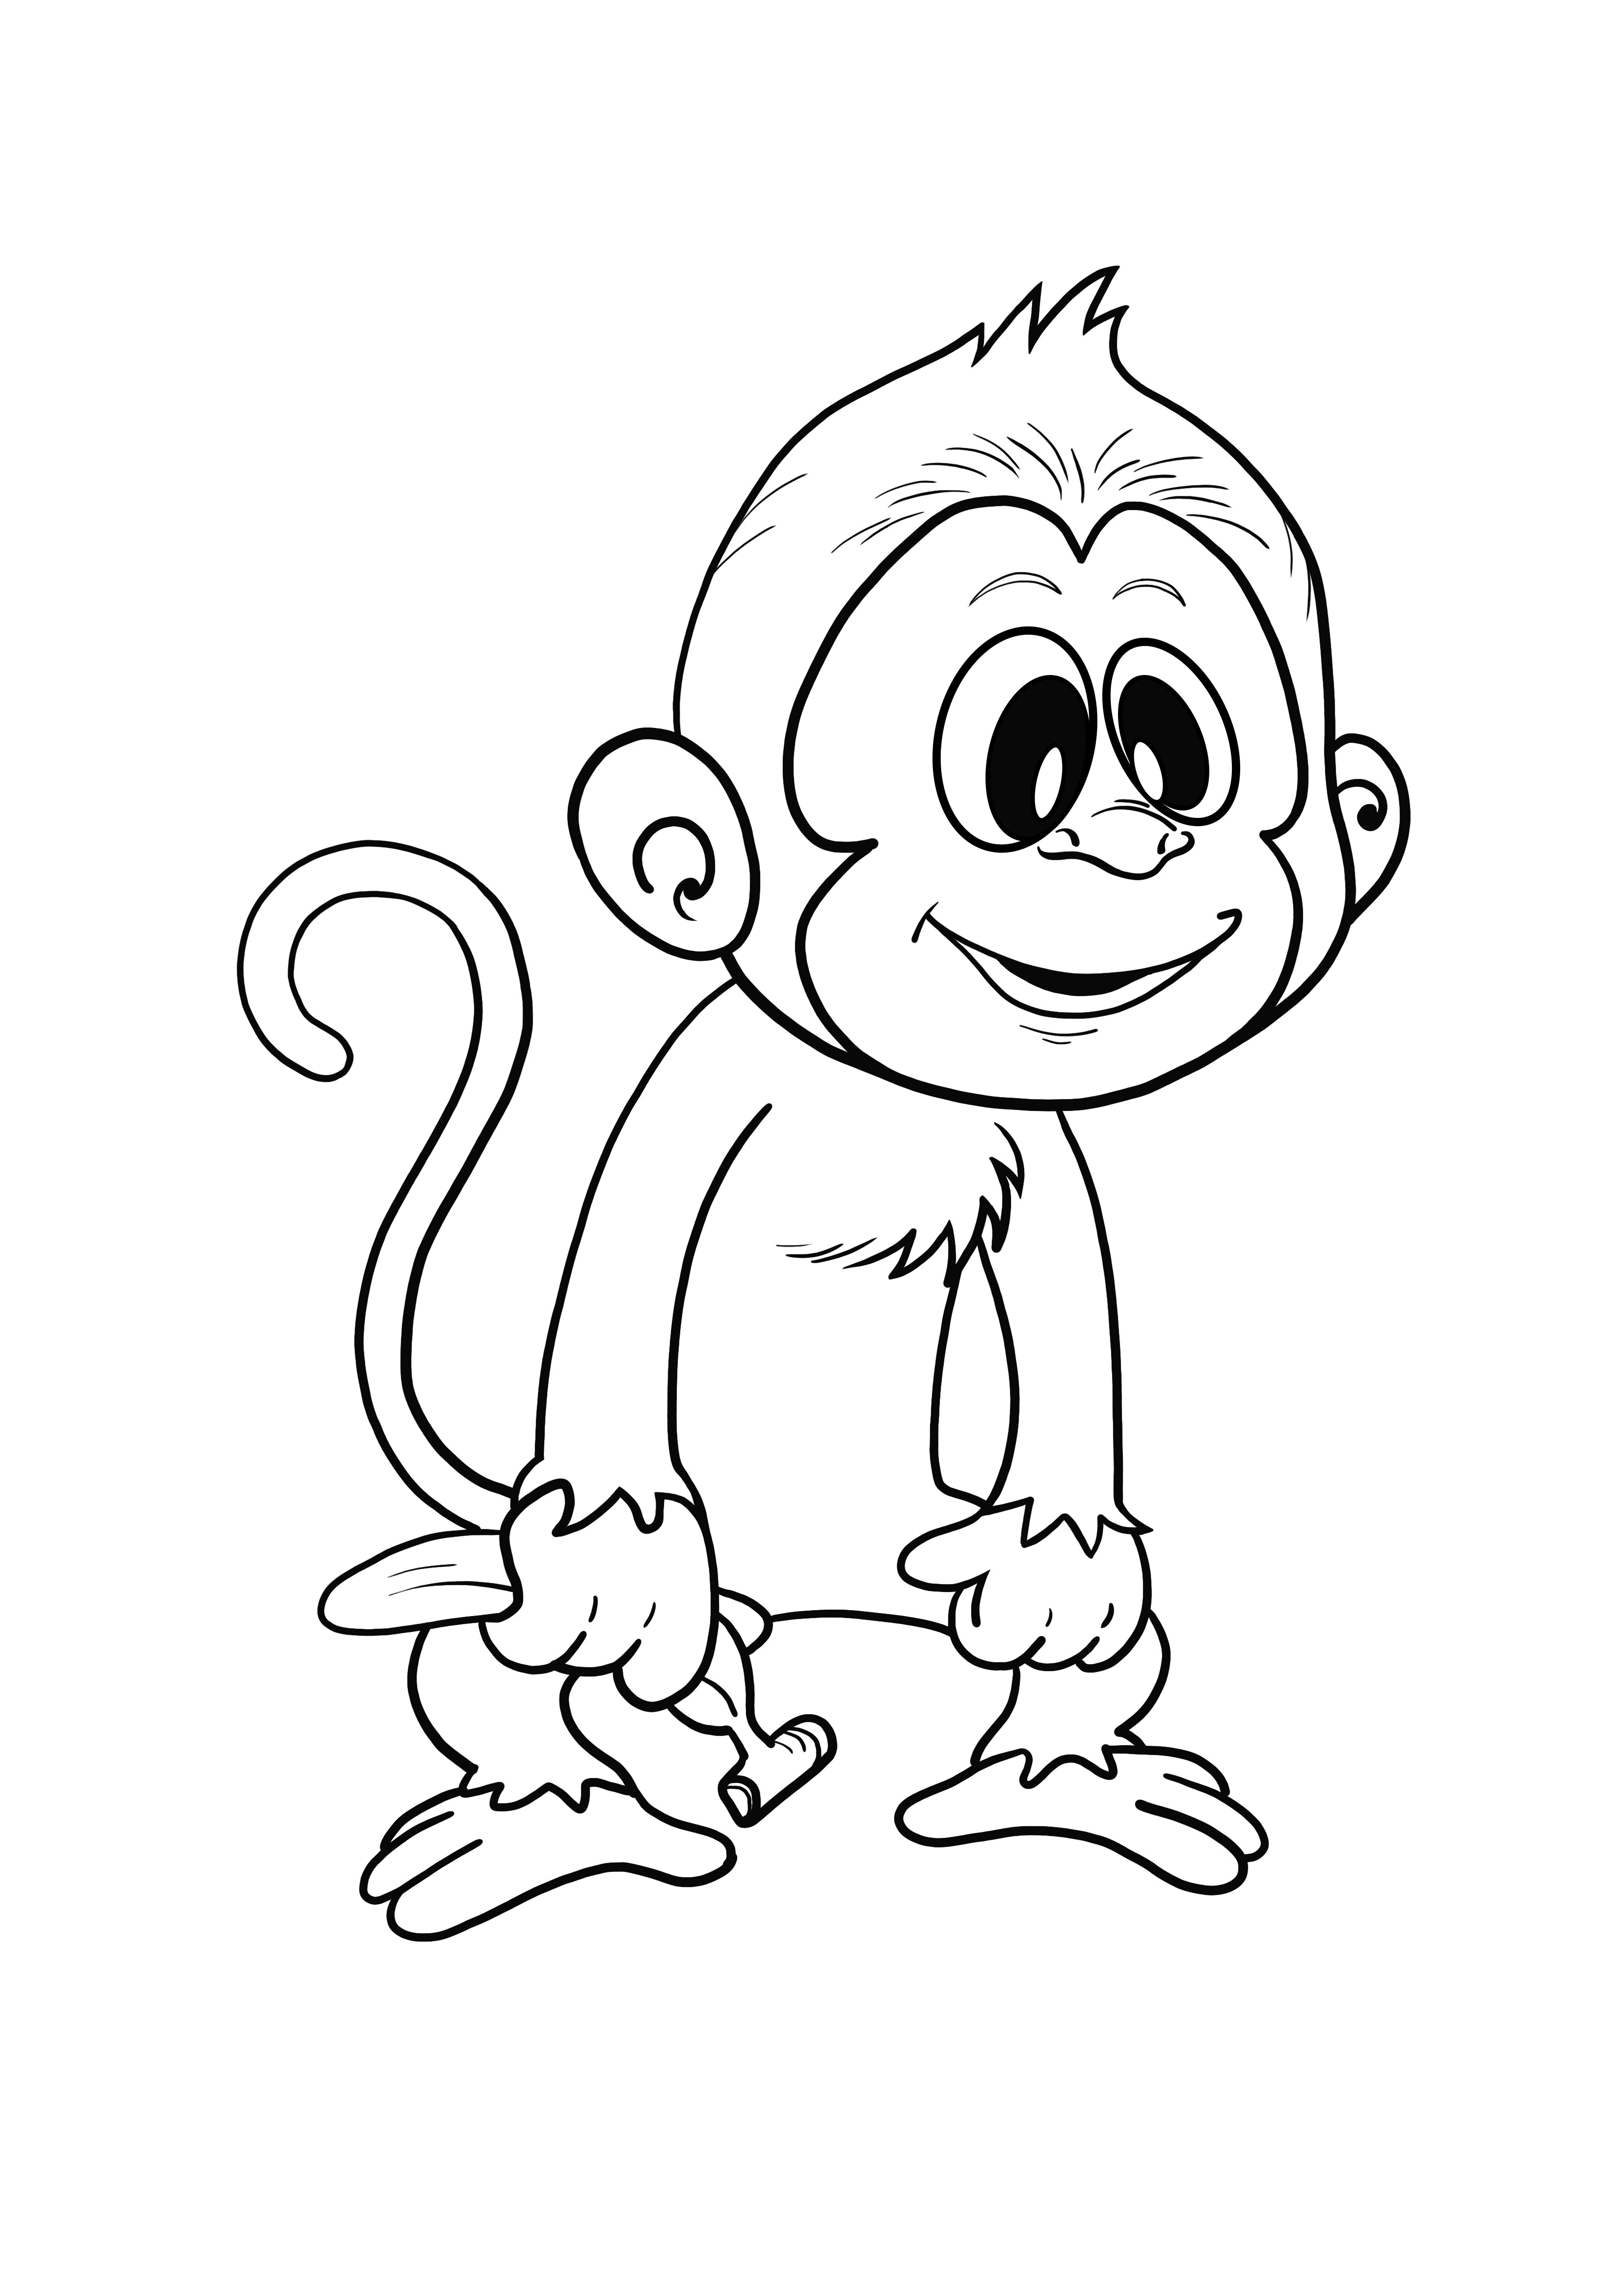 Basit boyama sayfası yazdırmak için havalı maymun